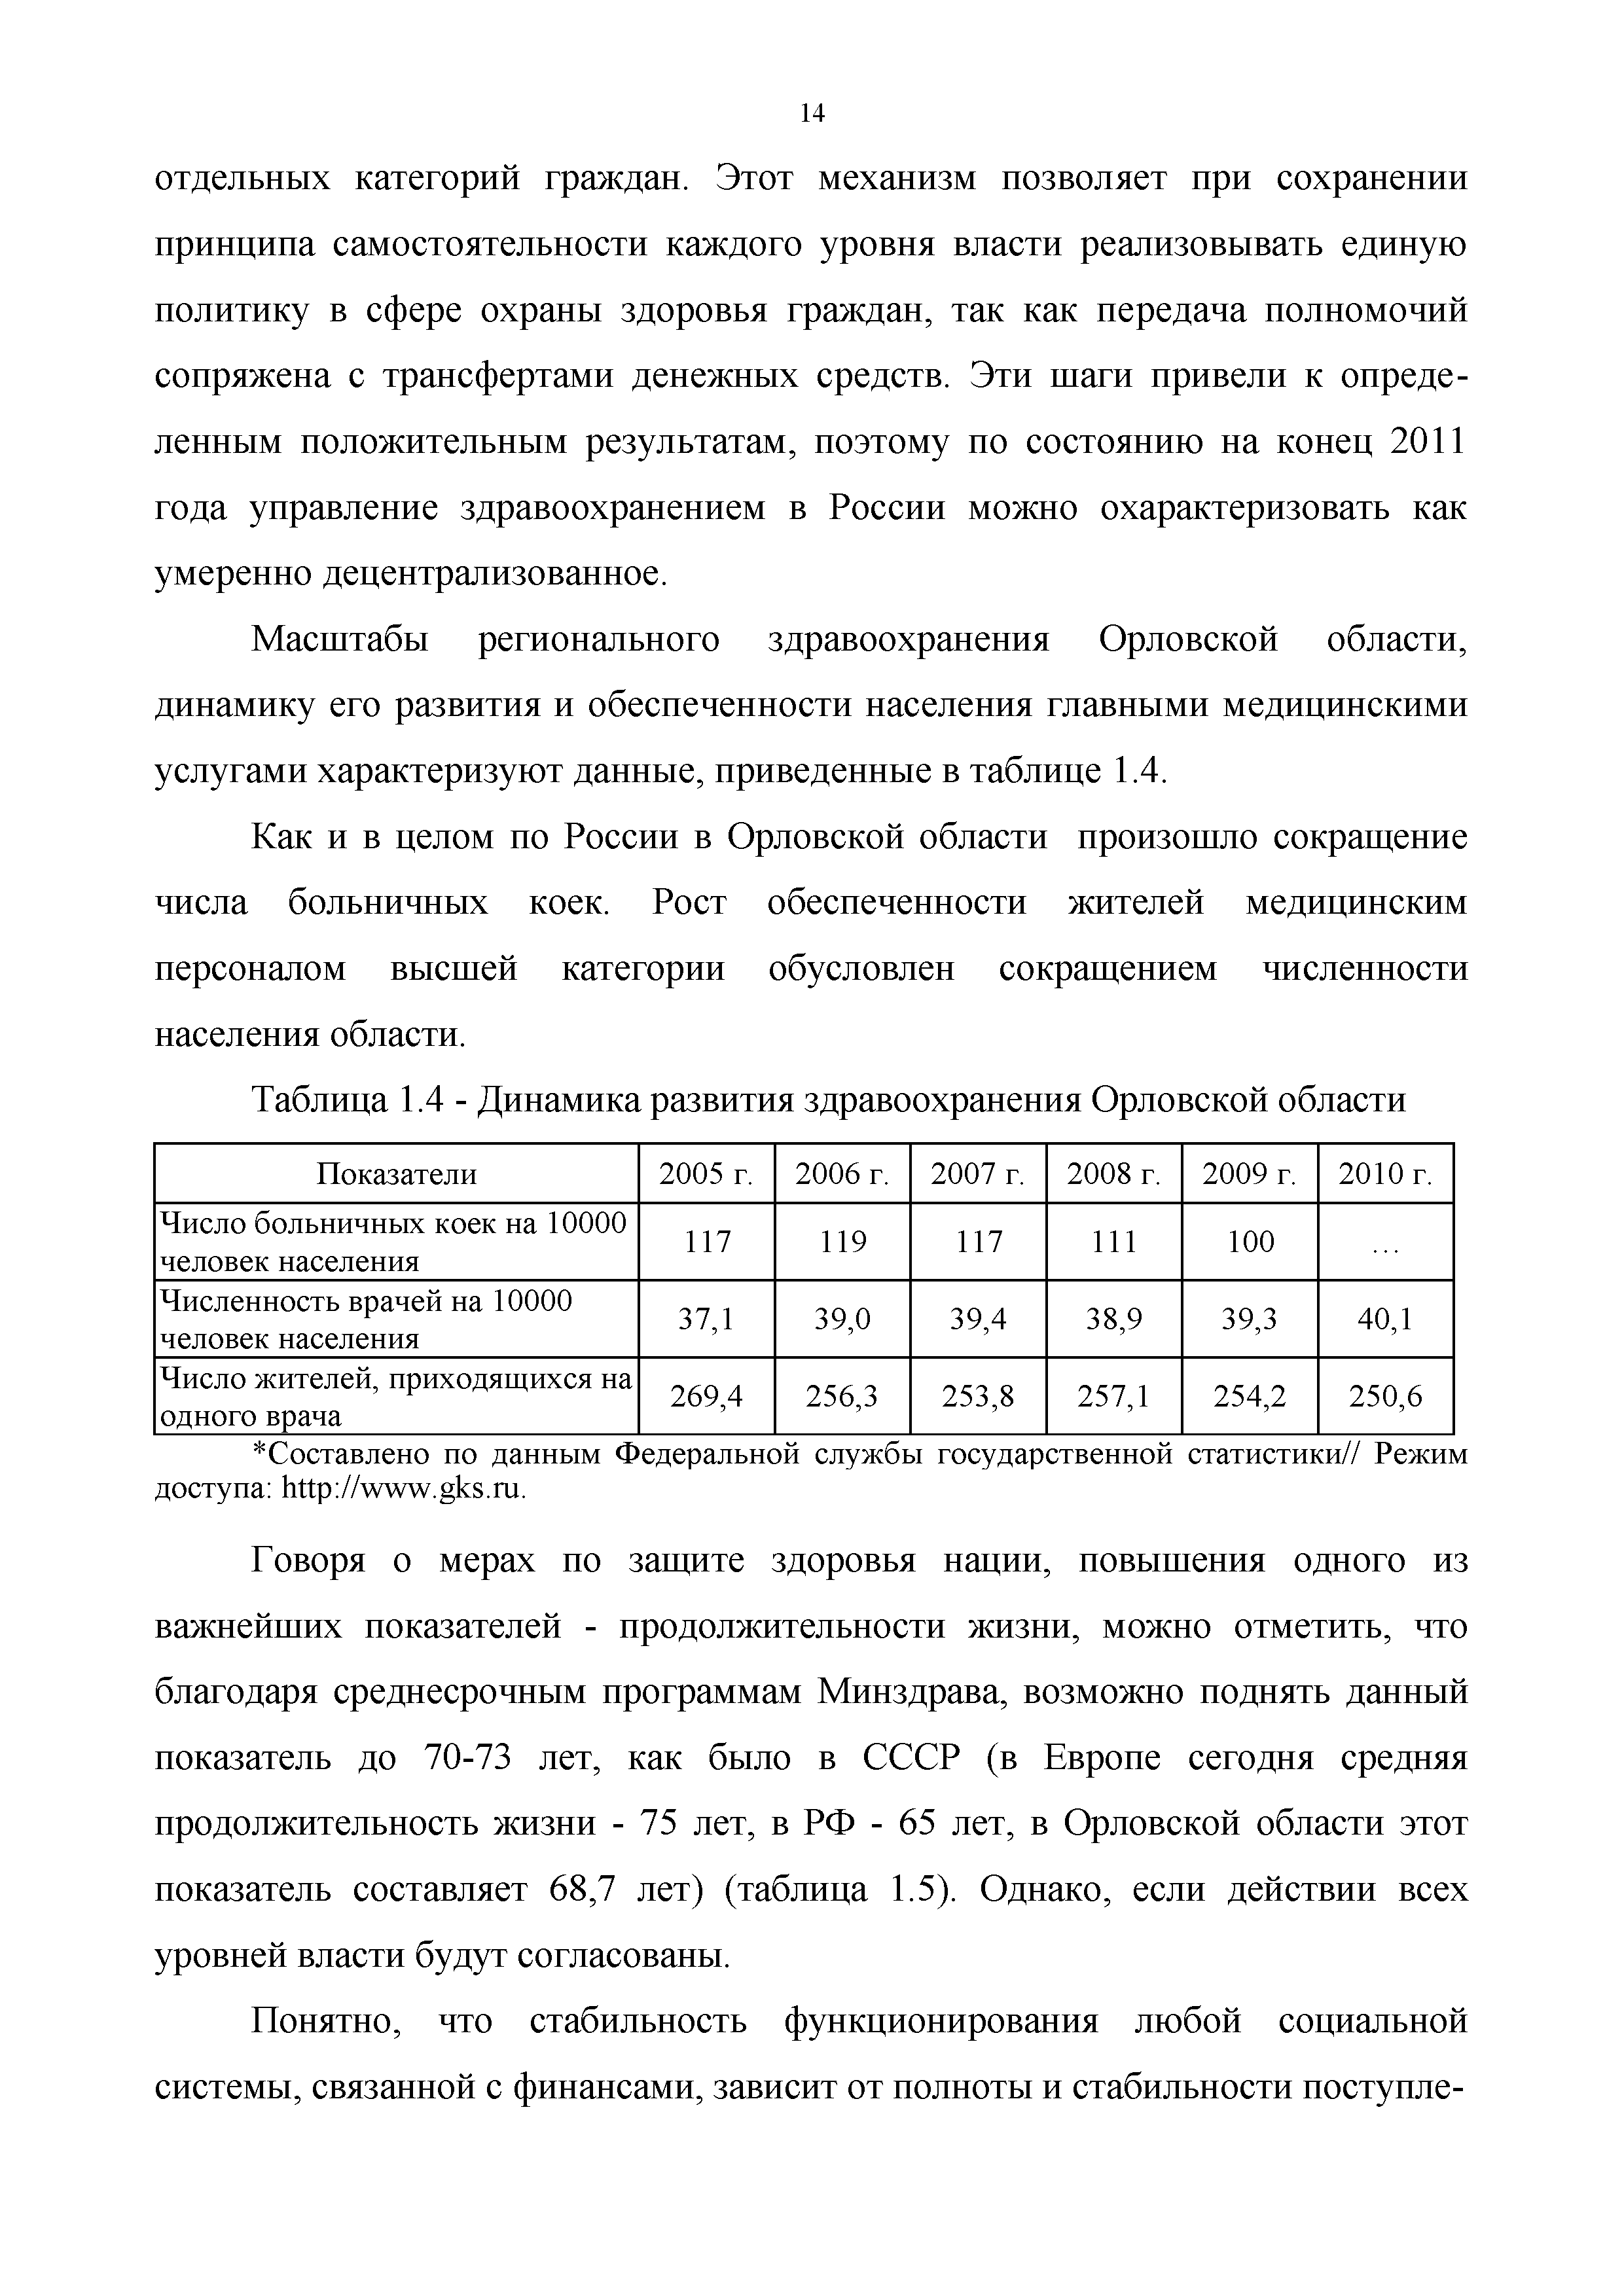 Таблица 1.4 - Динамика развития здравоохранения Орловской области...